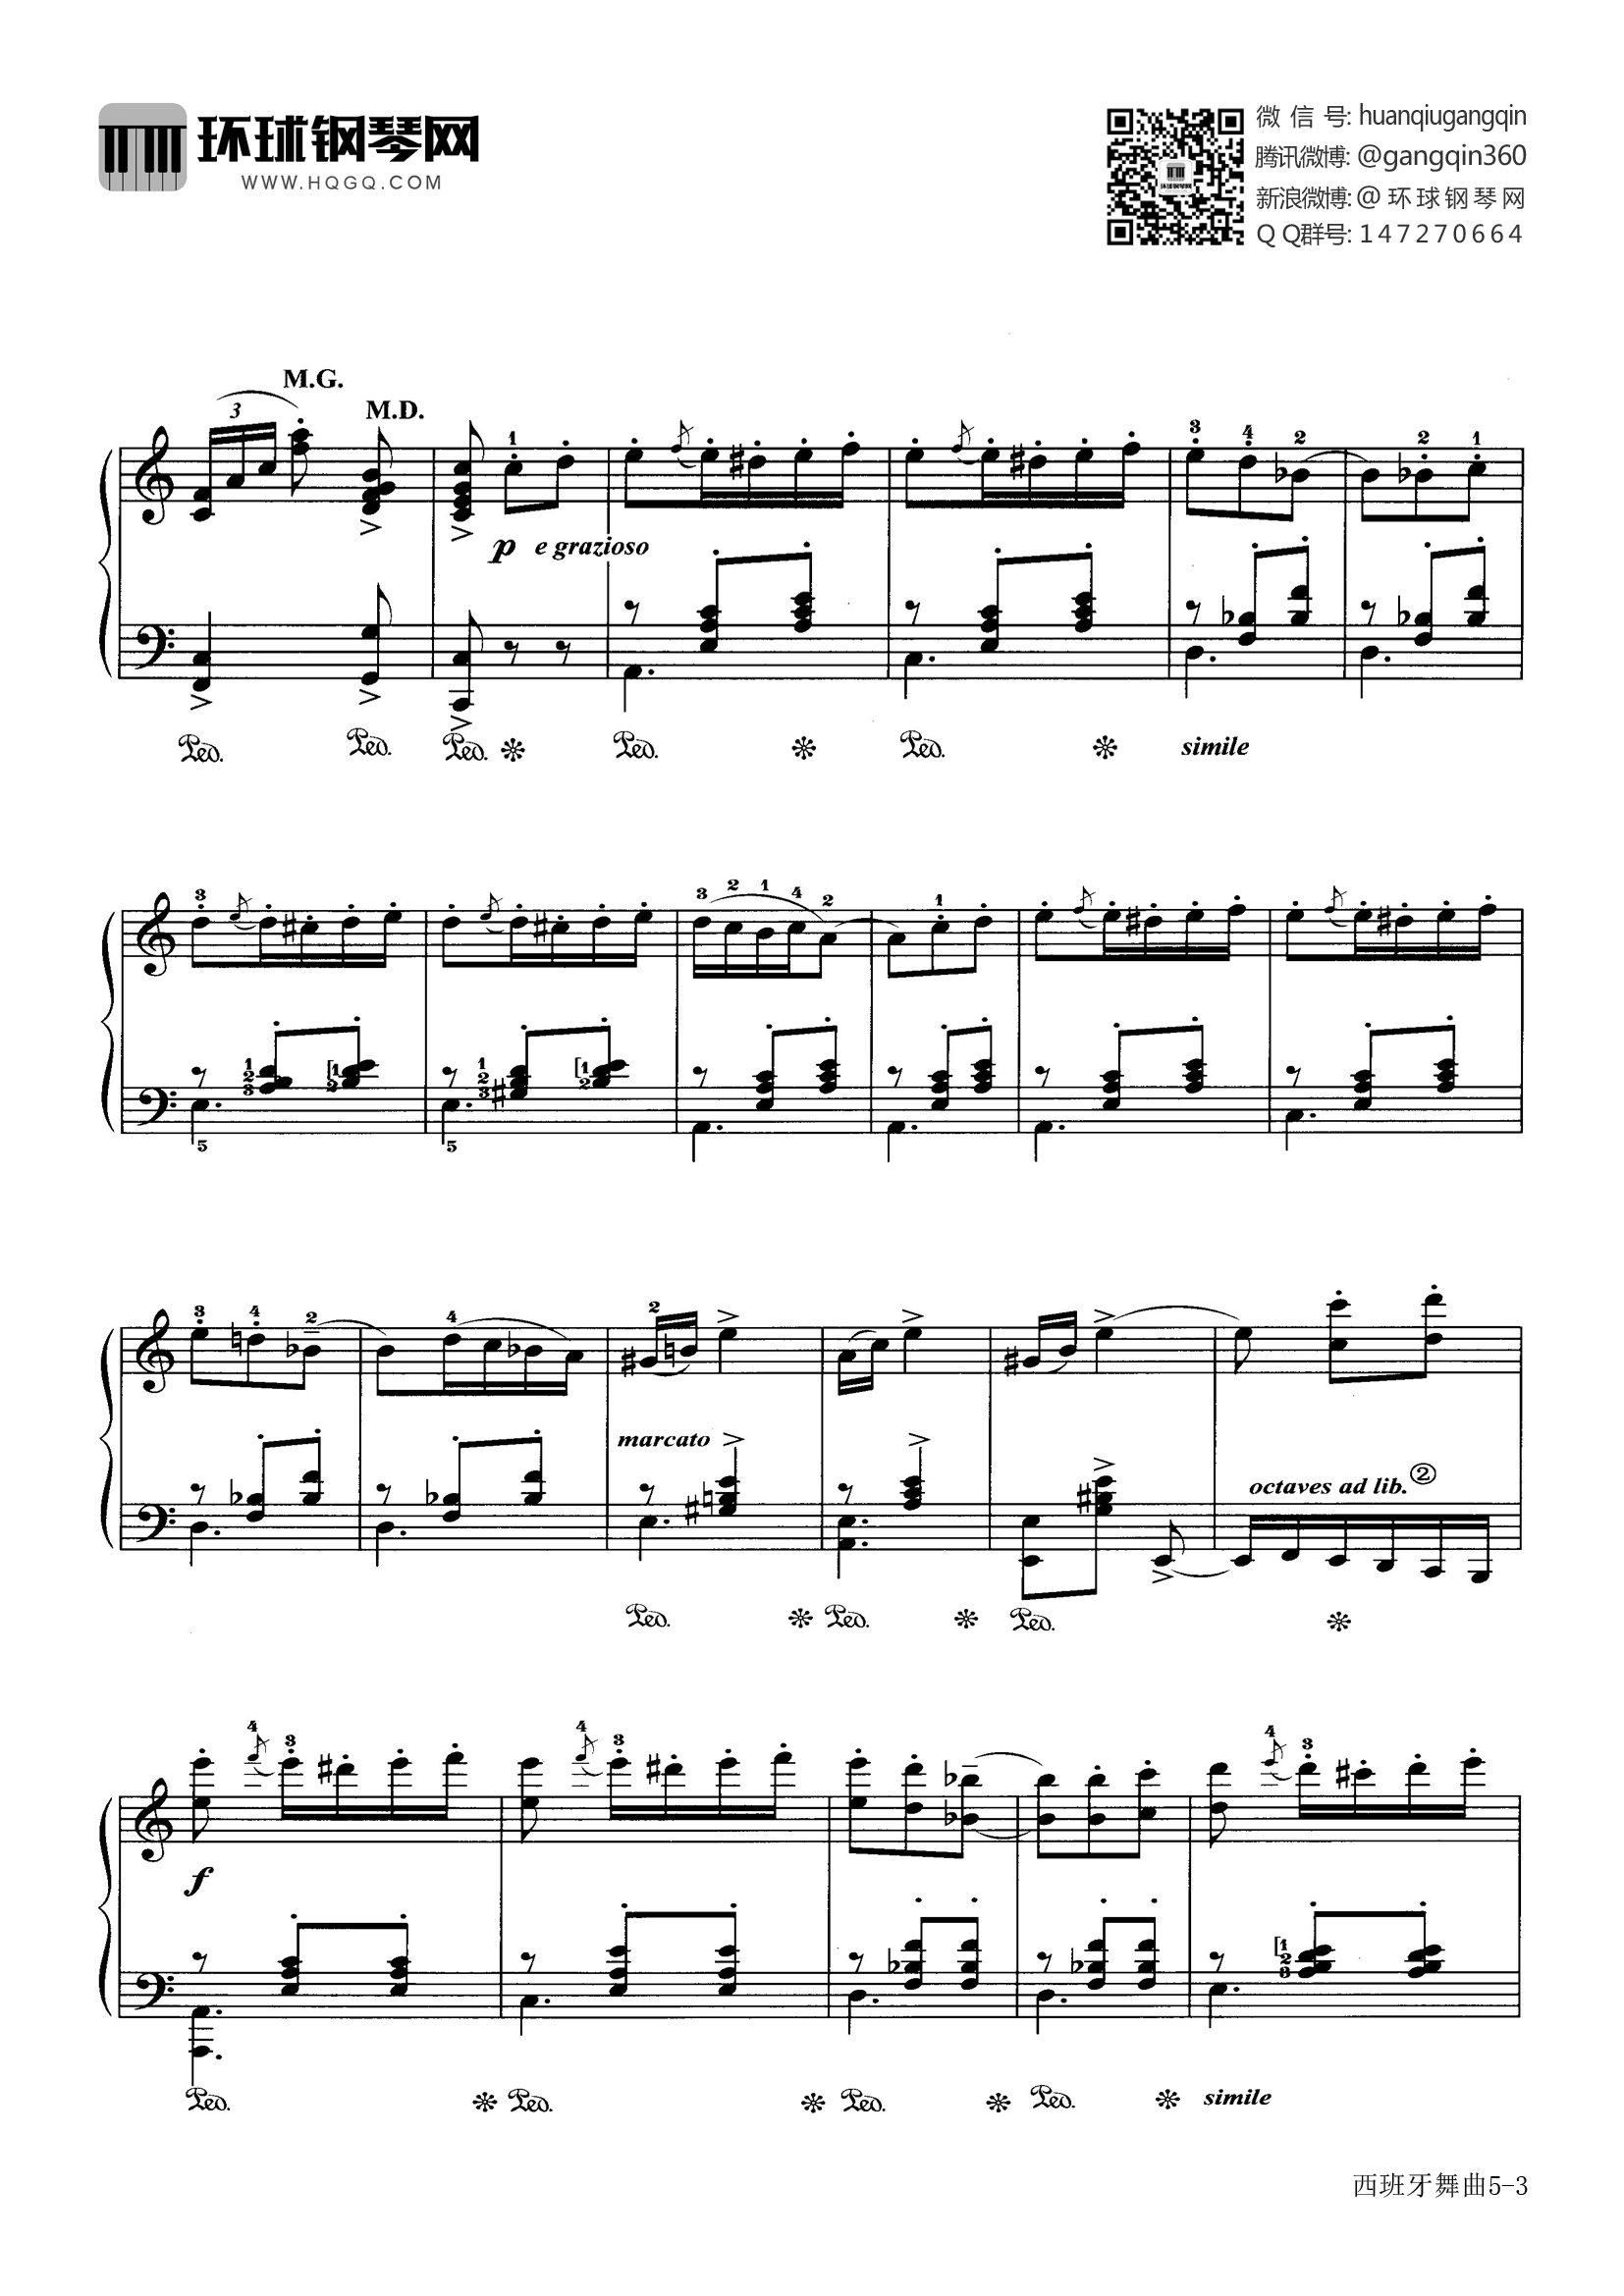 钢琴谱 西班牙舞曲(选自《中外钢琴独奏小品精选4》)  曲谱西班牙舞曲